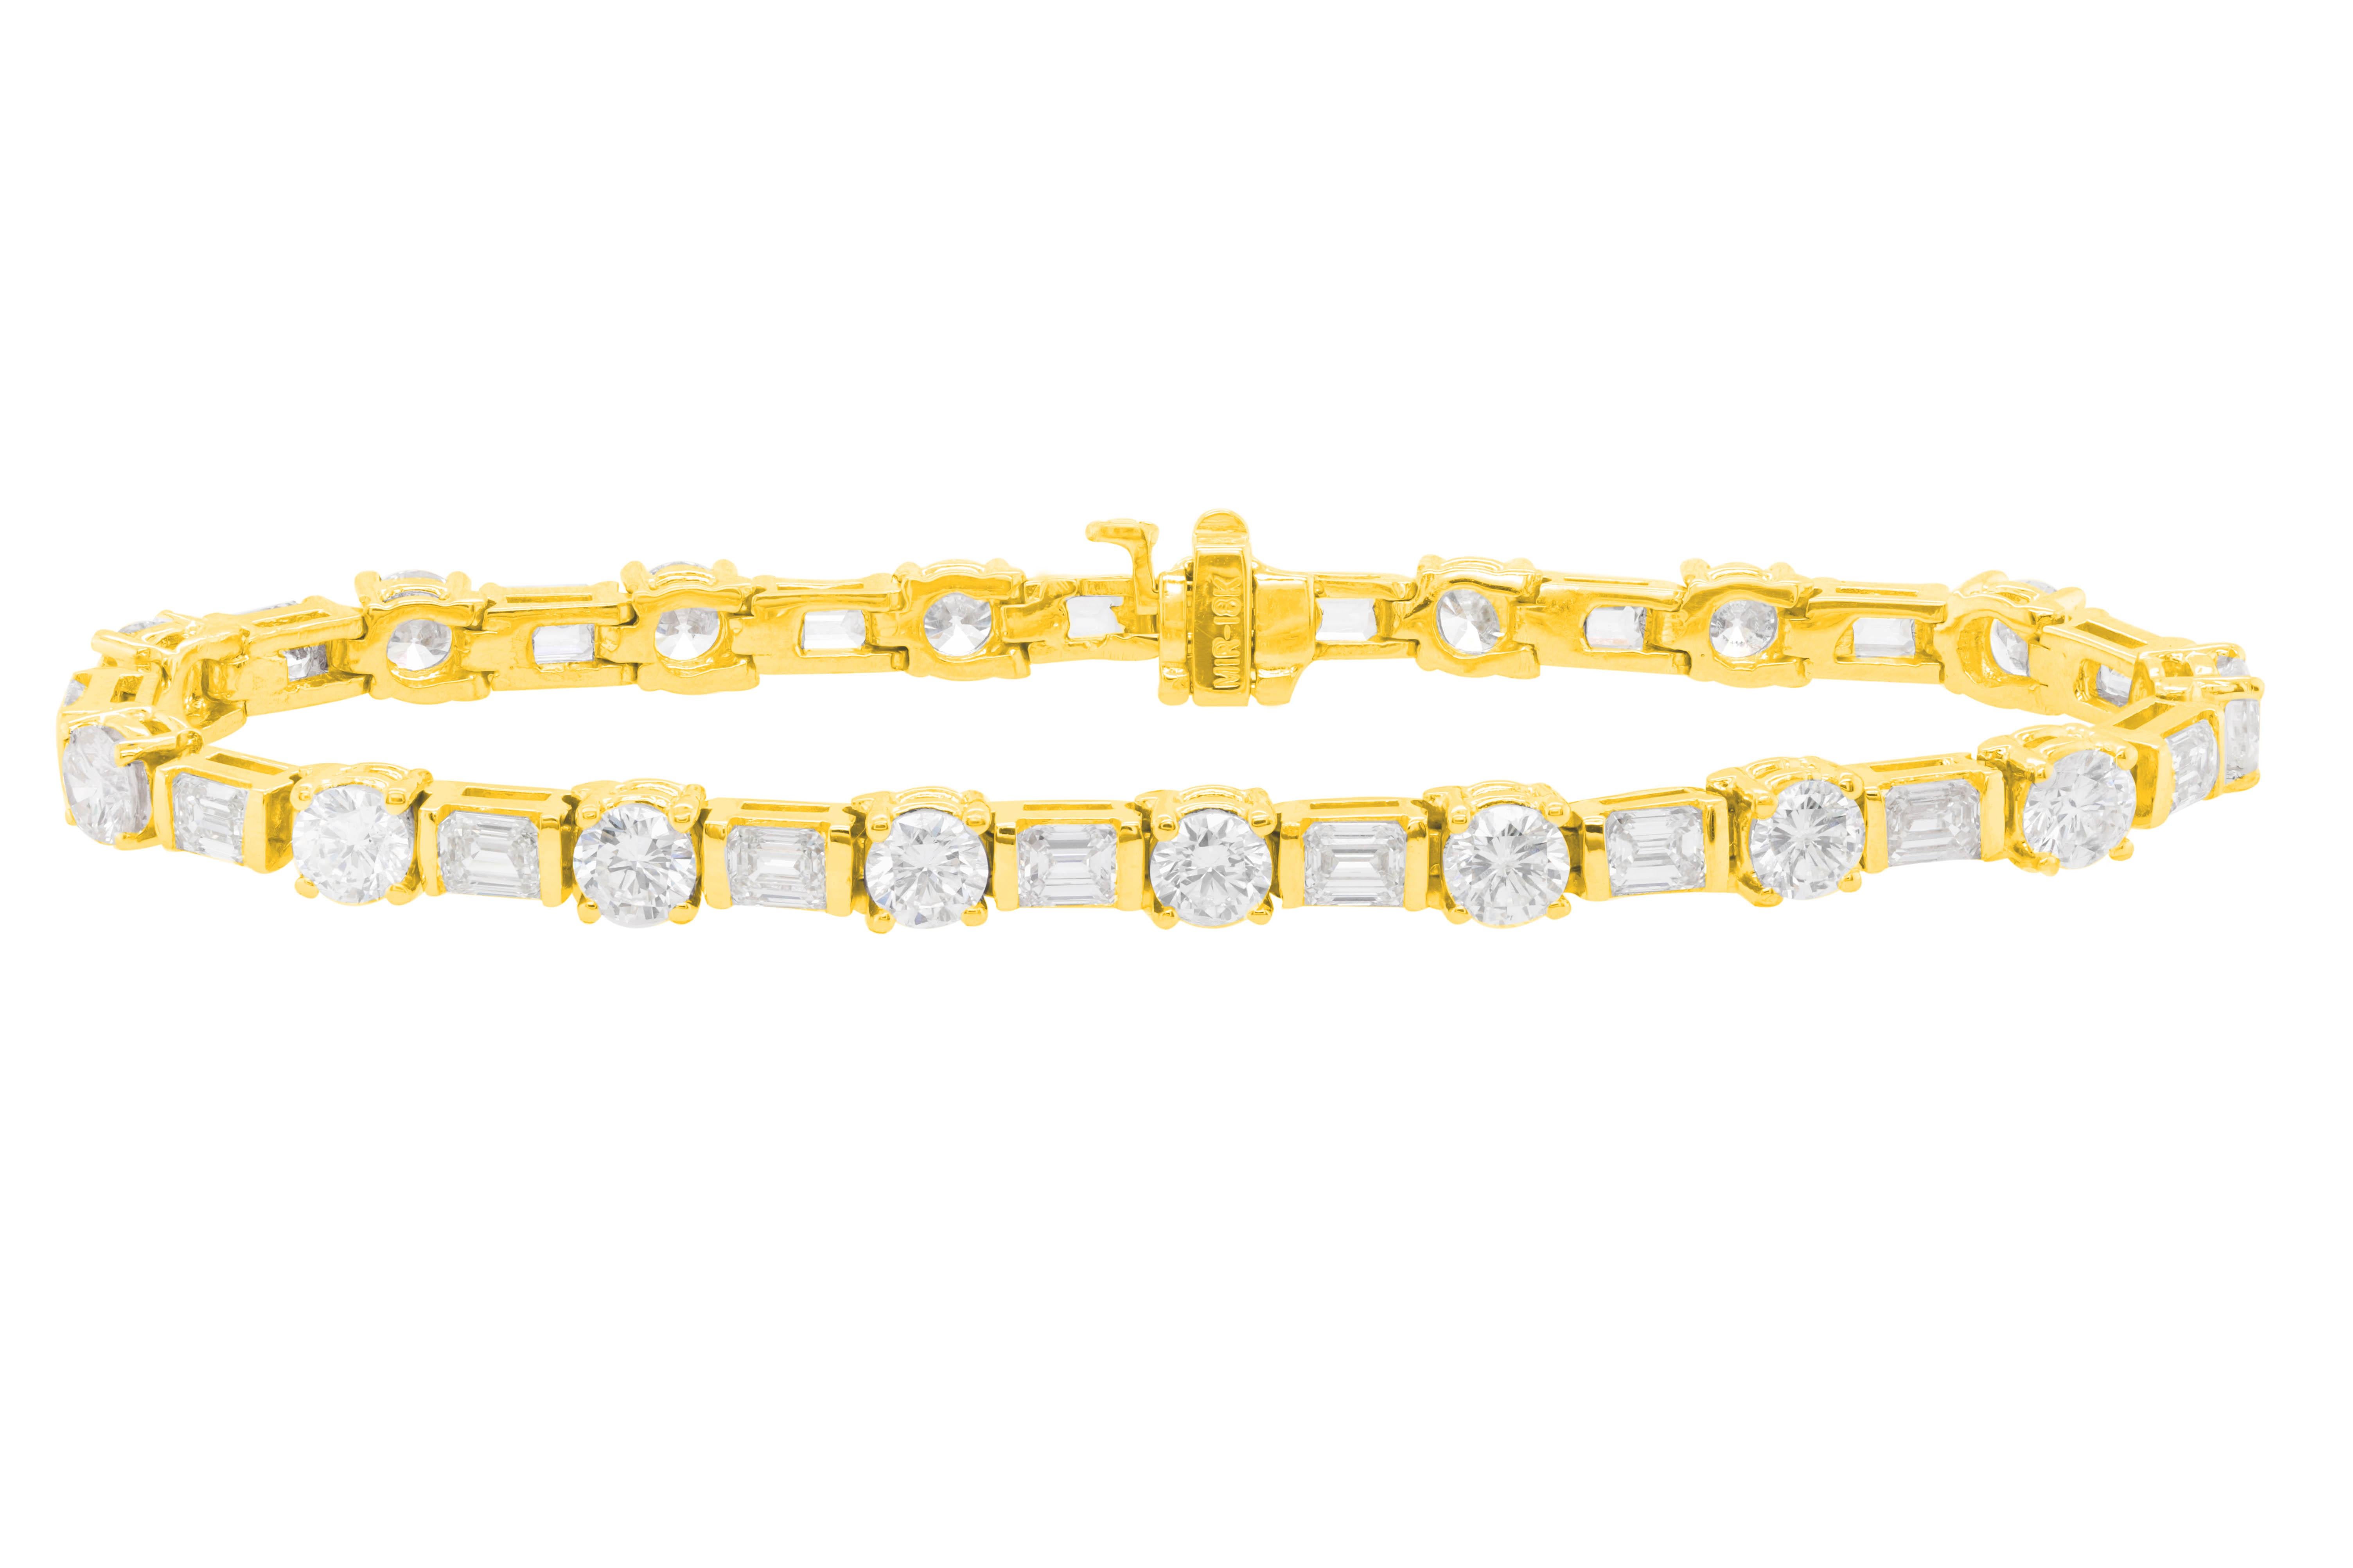 Bracelet tennis en or jaune 18 carats orné de 10.00 cts tw de diamants baguettes et ronds en serti horizontal alterné (34 pierres)
A&M est un fournisseur de premier plan de bijoux fins de qualité supérieure depuis plus de 35 ans.
Diana M-One est un